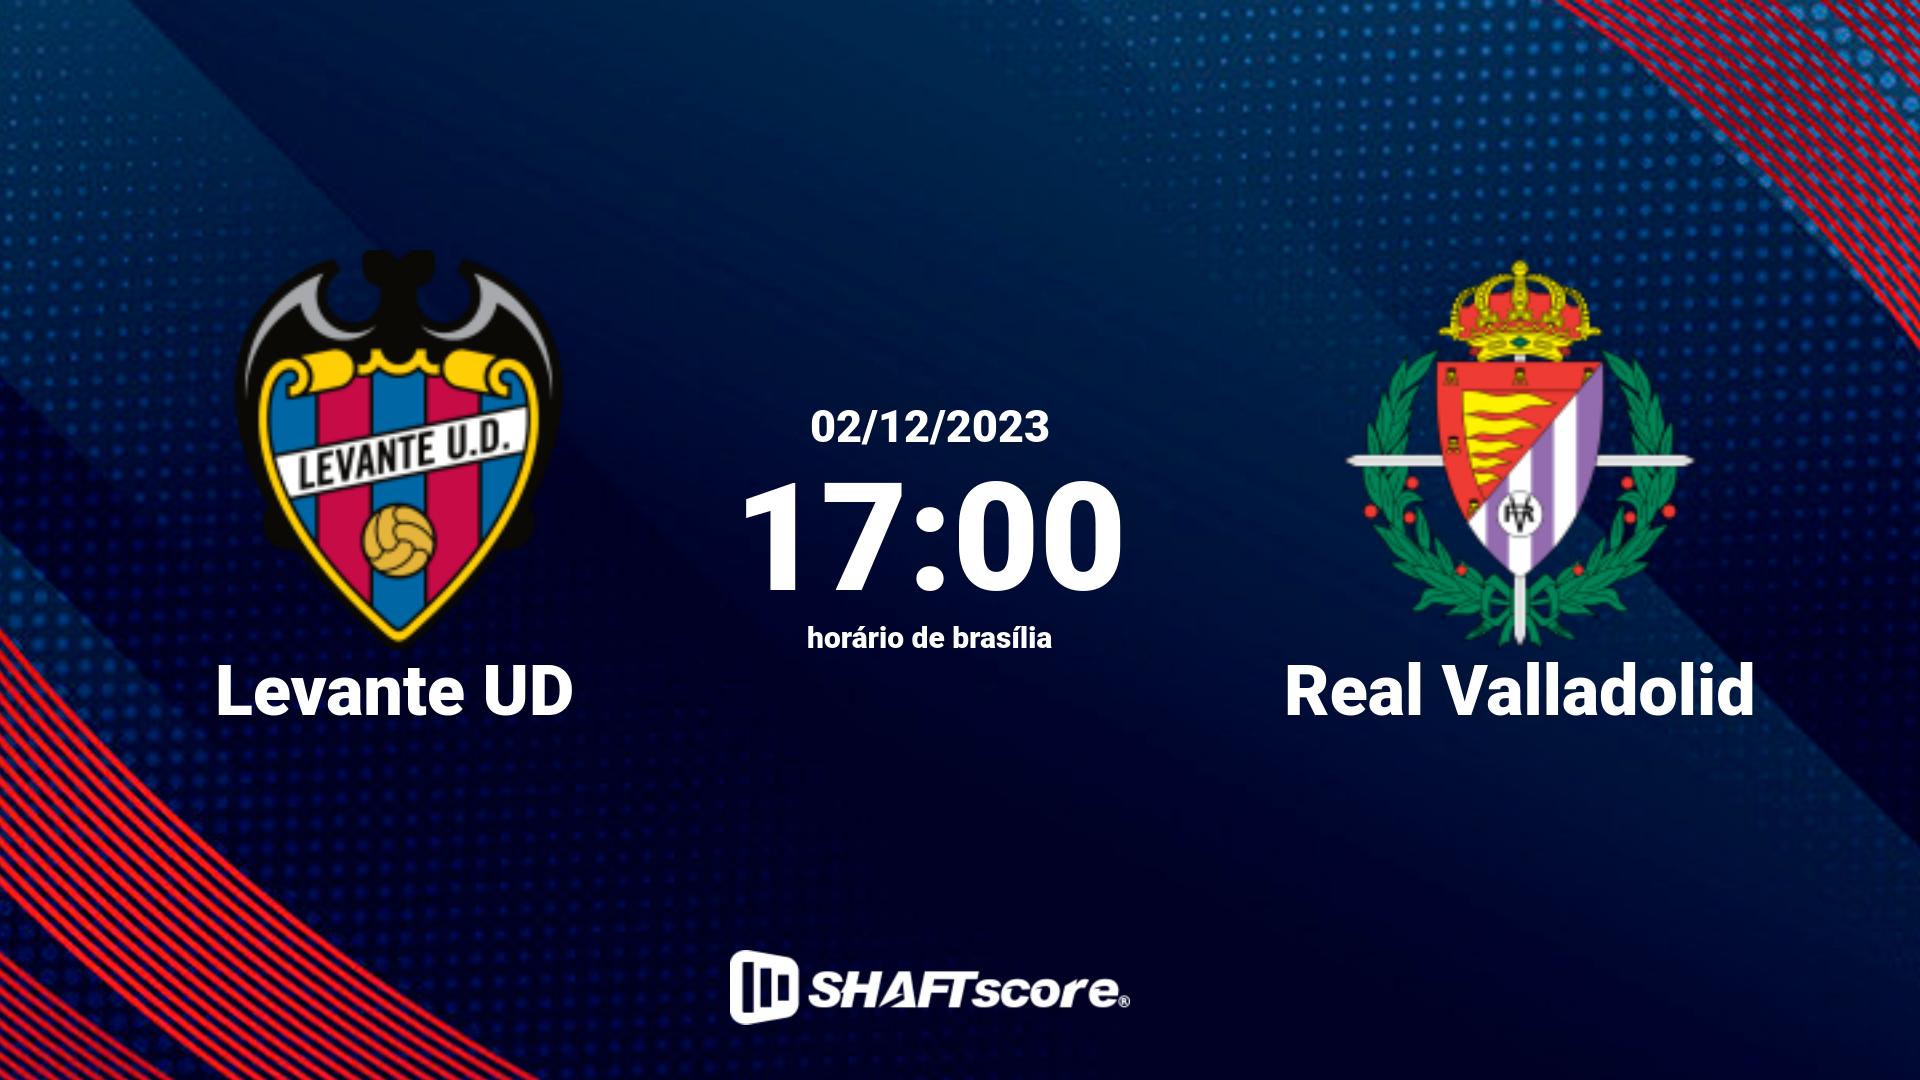 Estatísticas do jogo Levante UD vs Real Valladolid 02.12 17:00